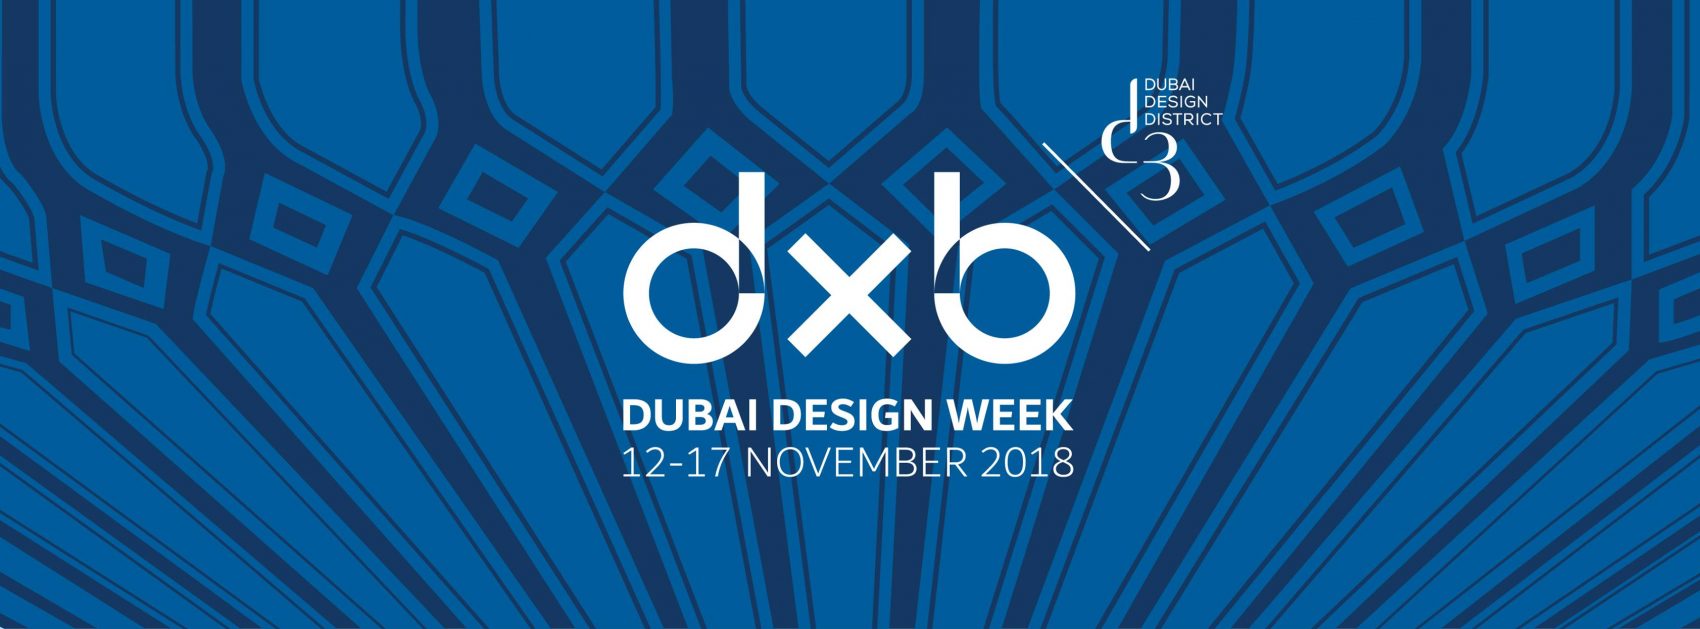 Dubai Design Week 2018 - Coming Soon in UAE